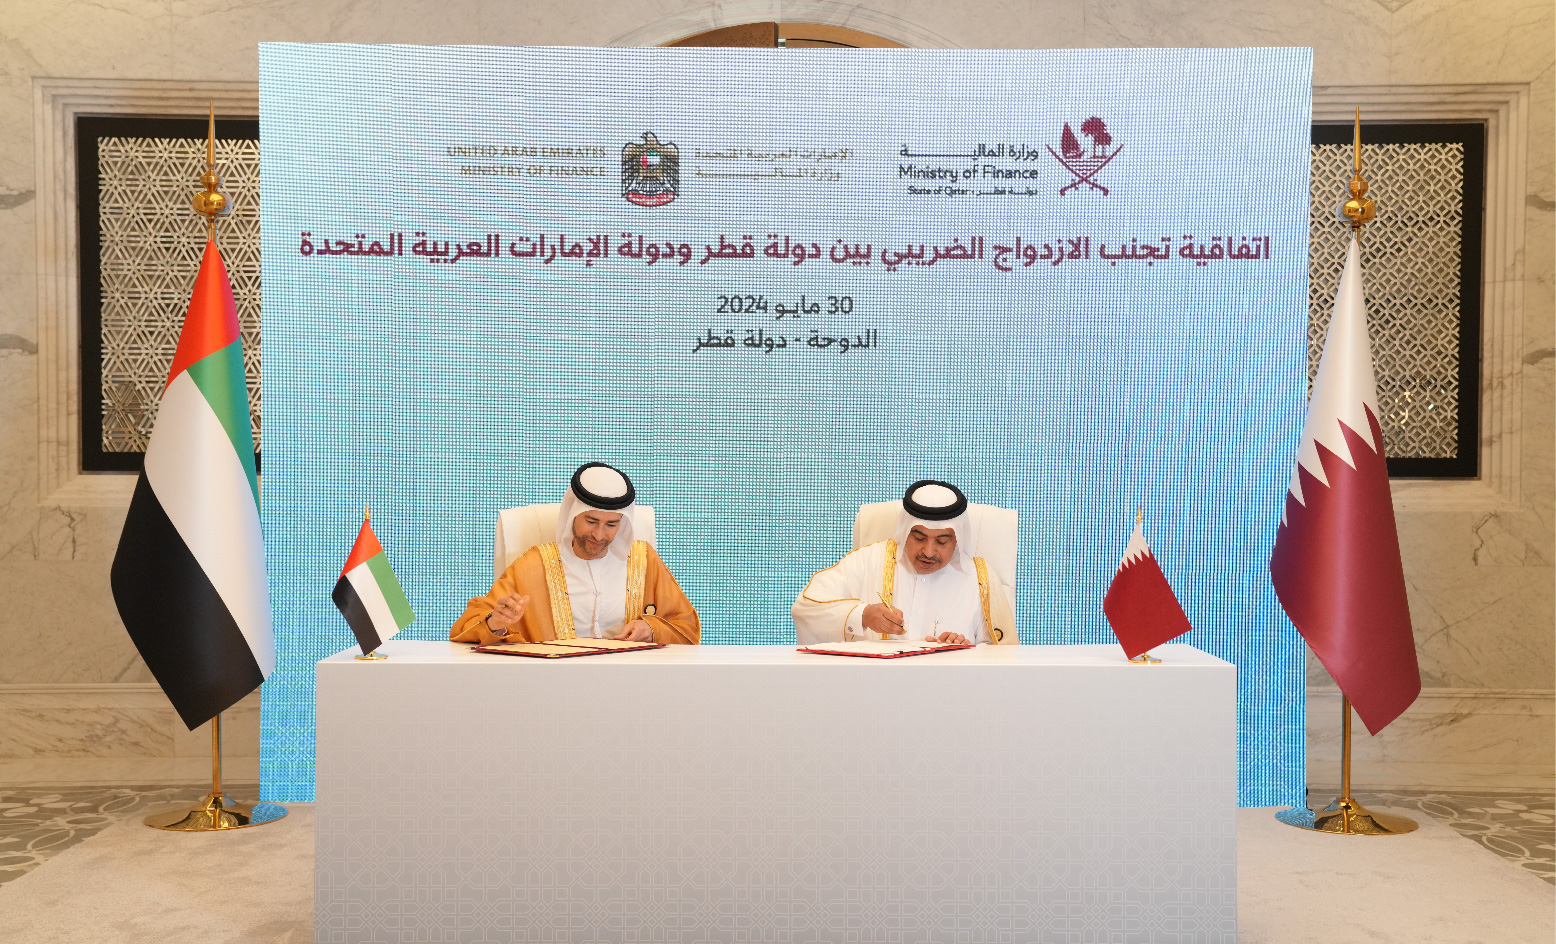 دولة قطر توقع اتفاقية بشأن تجنب الازدواج الضريبي مع دولة الإمارات العربية المتحدة